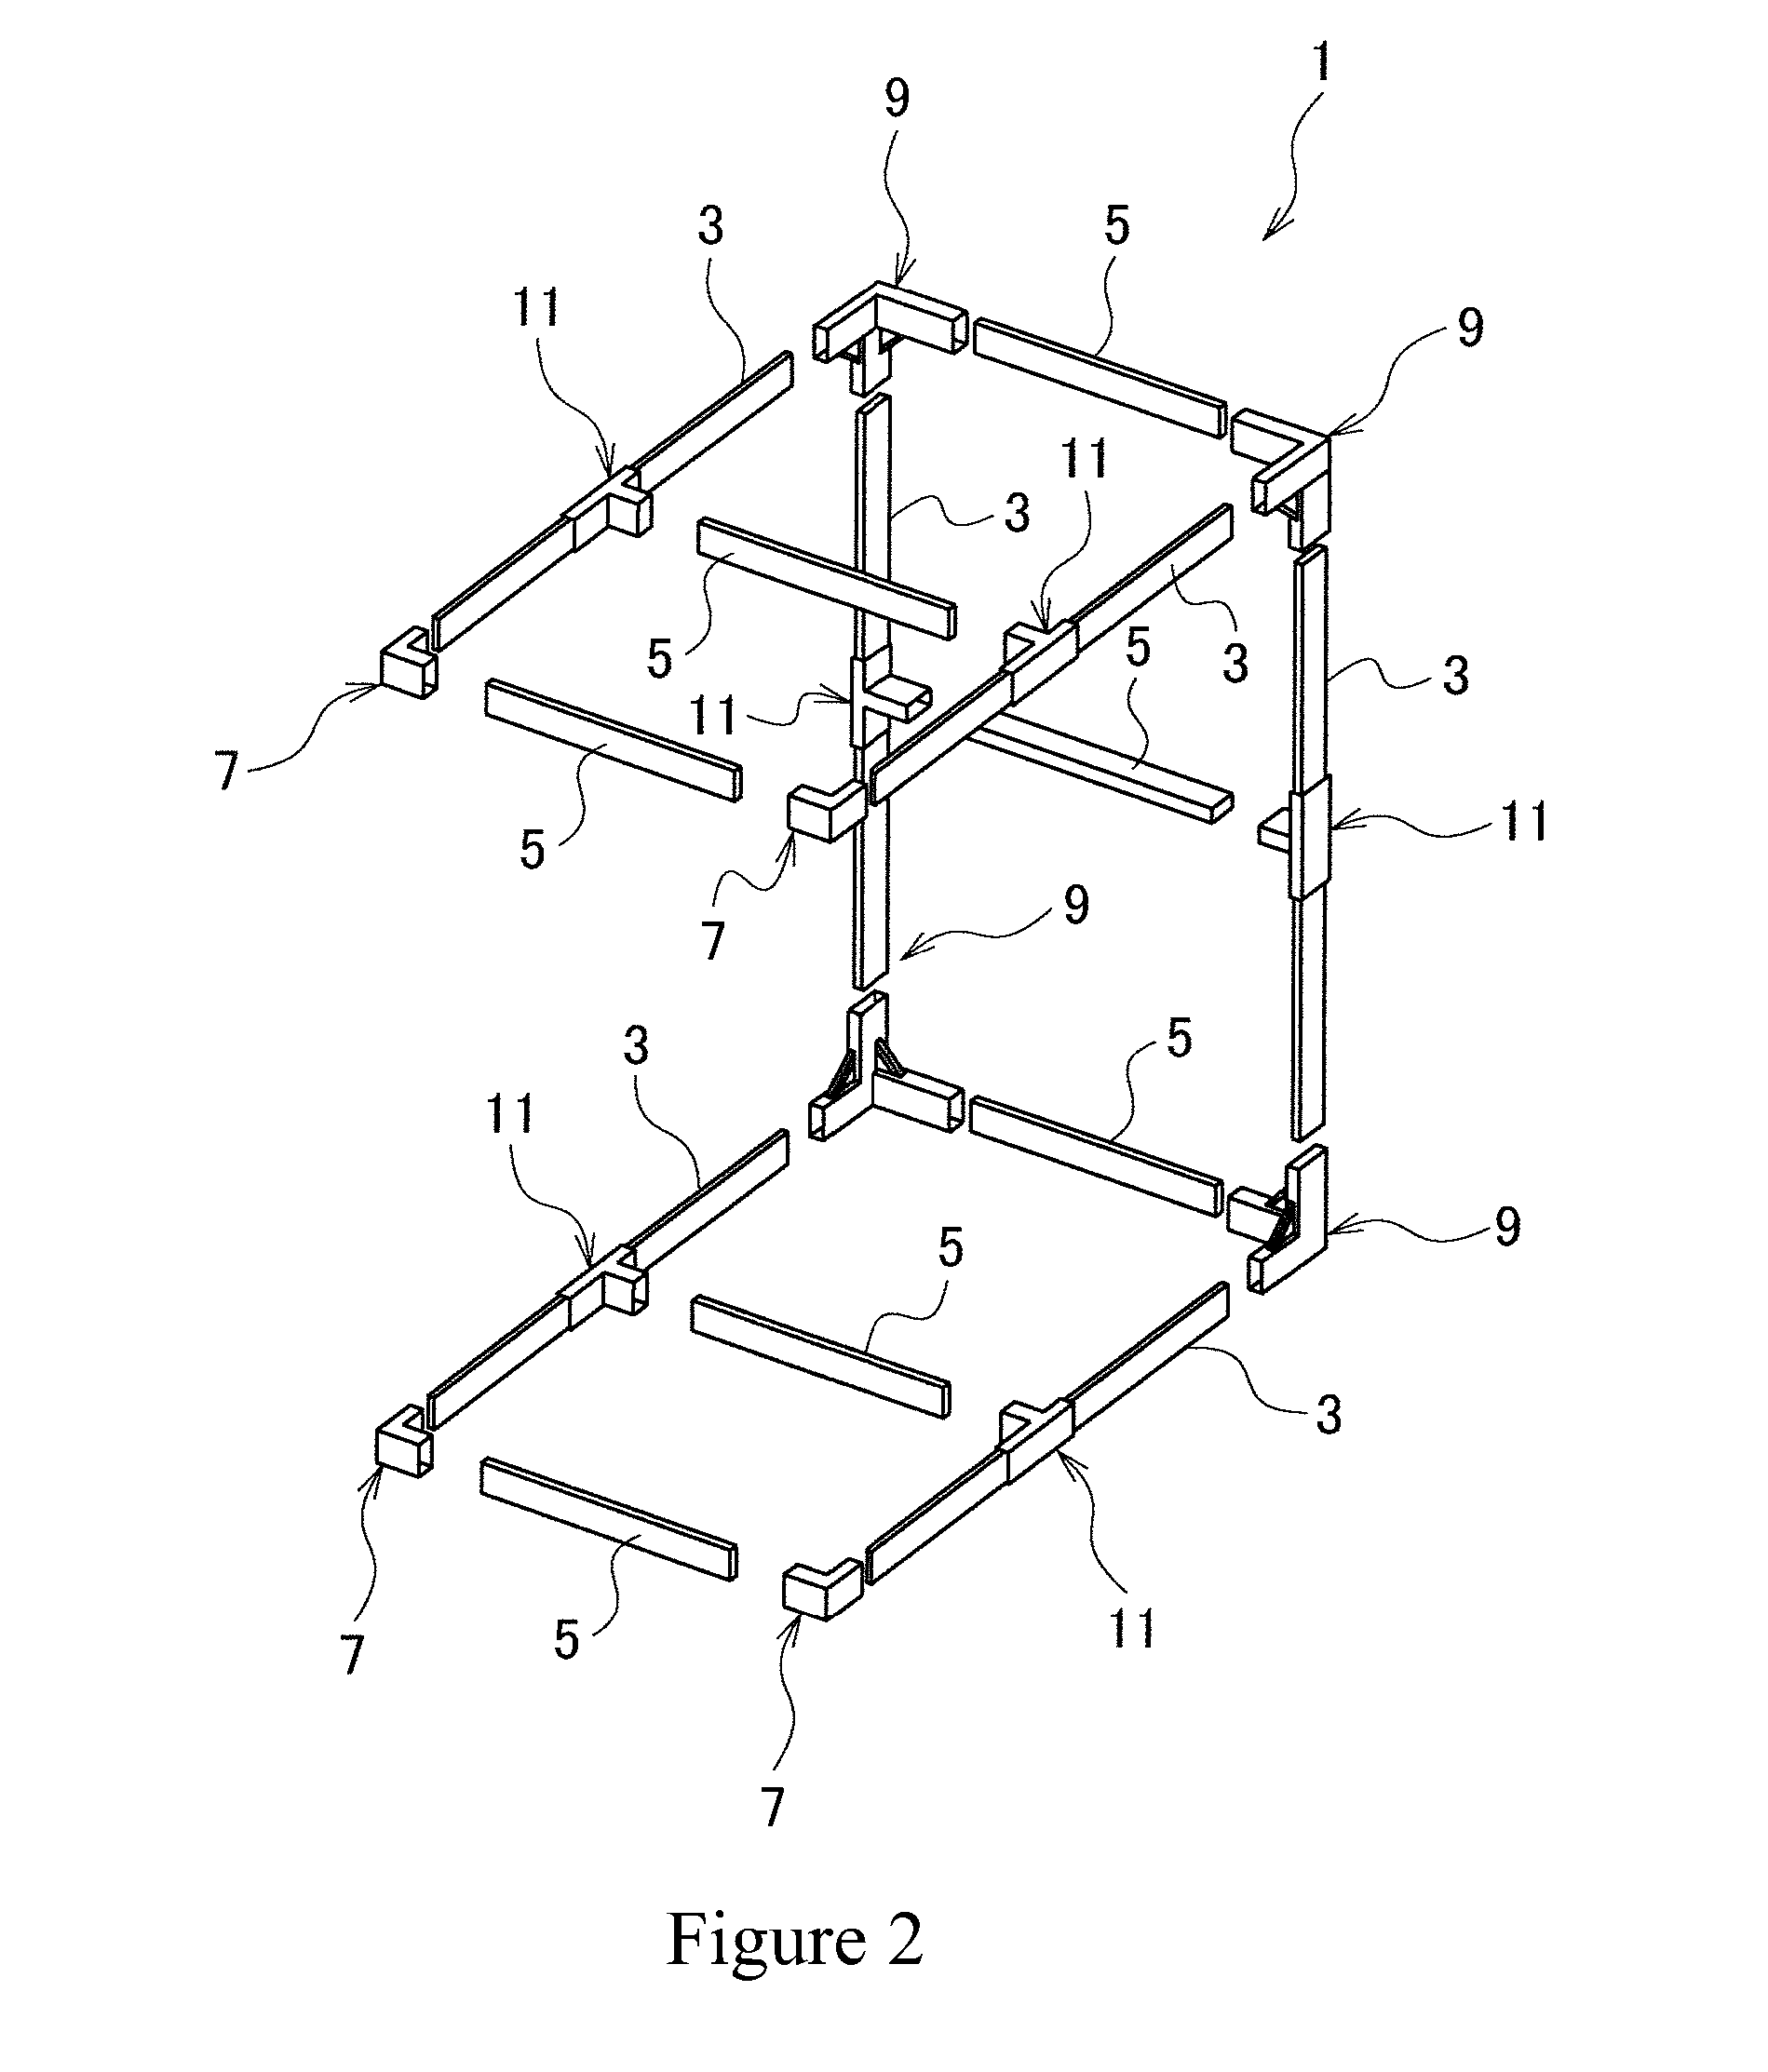 Multi-purpose mobile modular structure